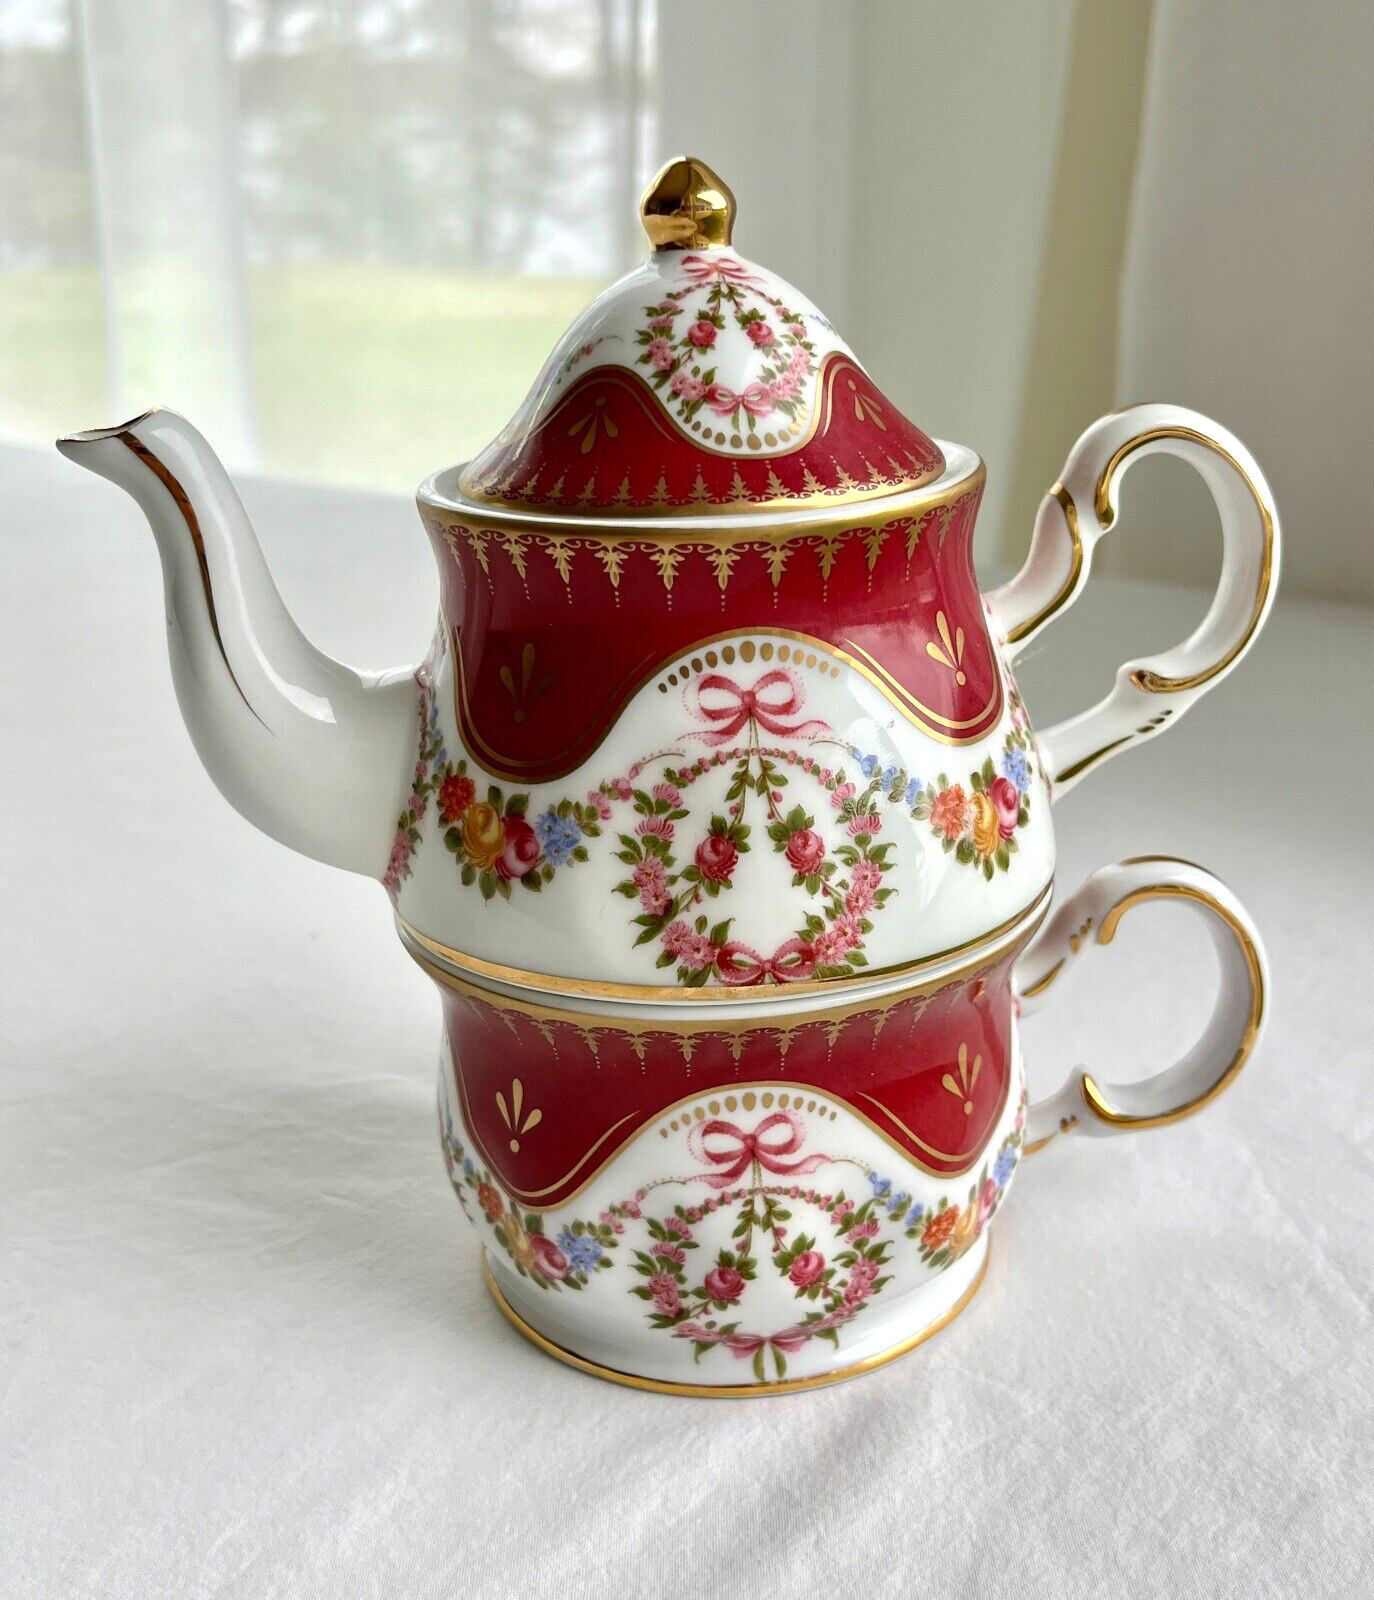 VTG GANZ- Tea for One  Flower Wreaths Gold Trim 3 Piece Set Porcelain Rare Find